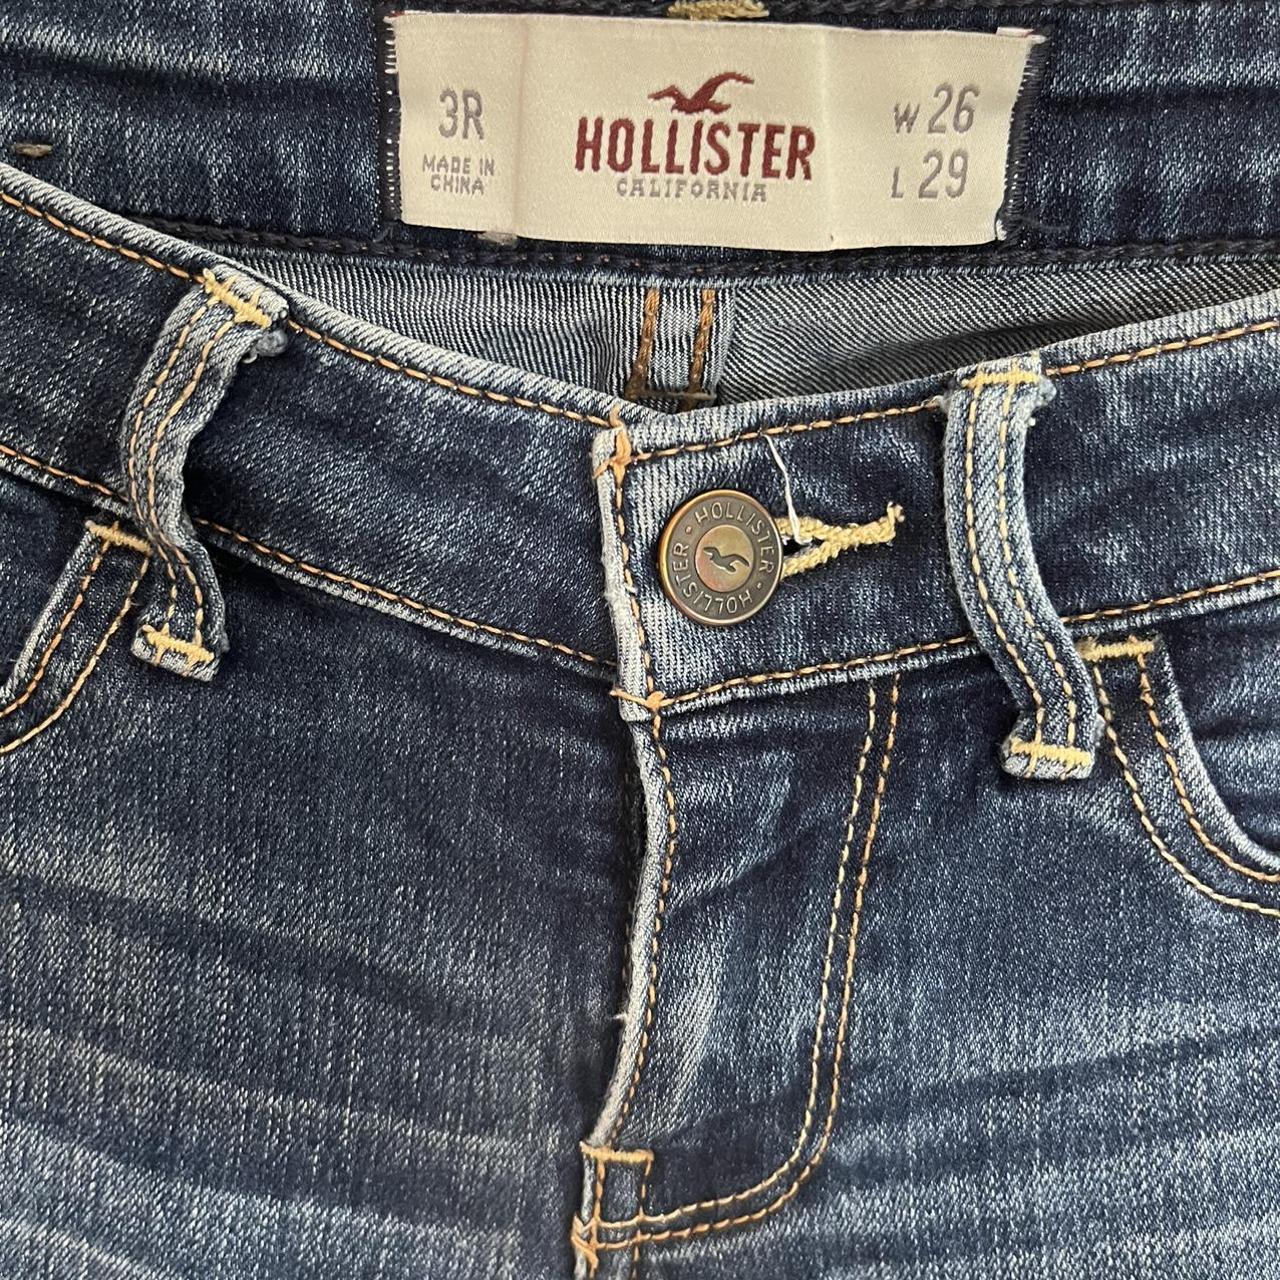 Hollister low rise jeans. No longer wear them but... - Depop